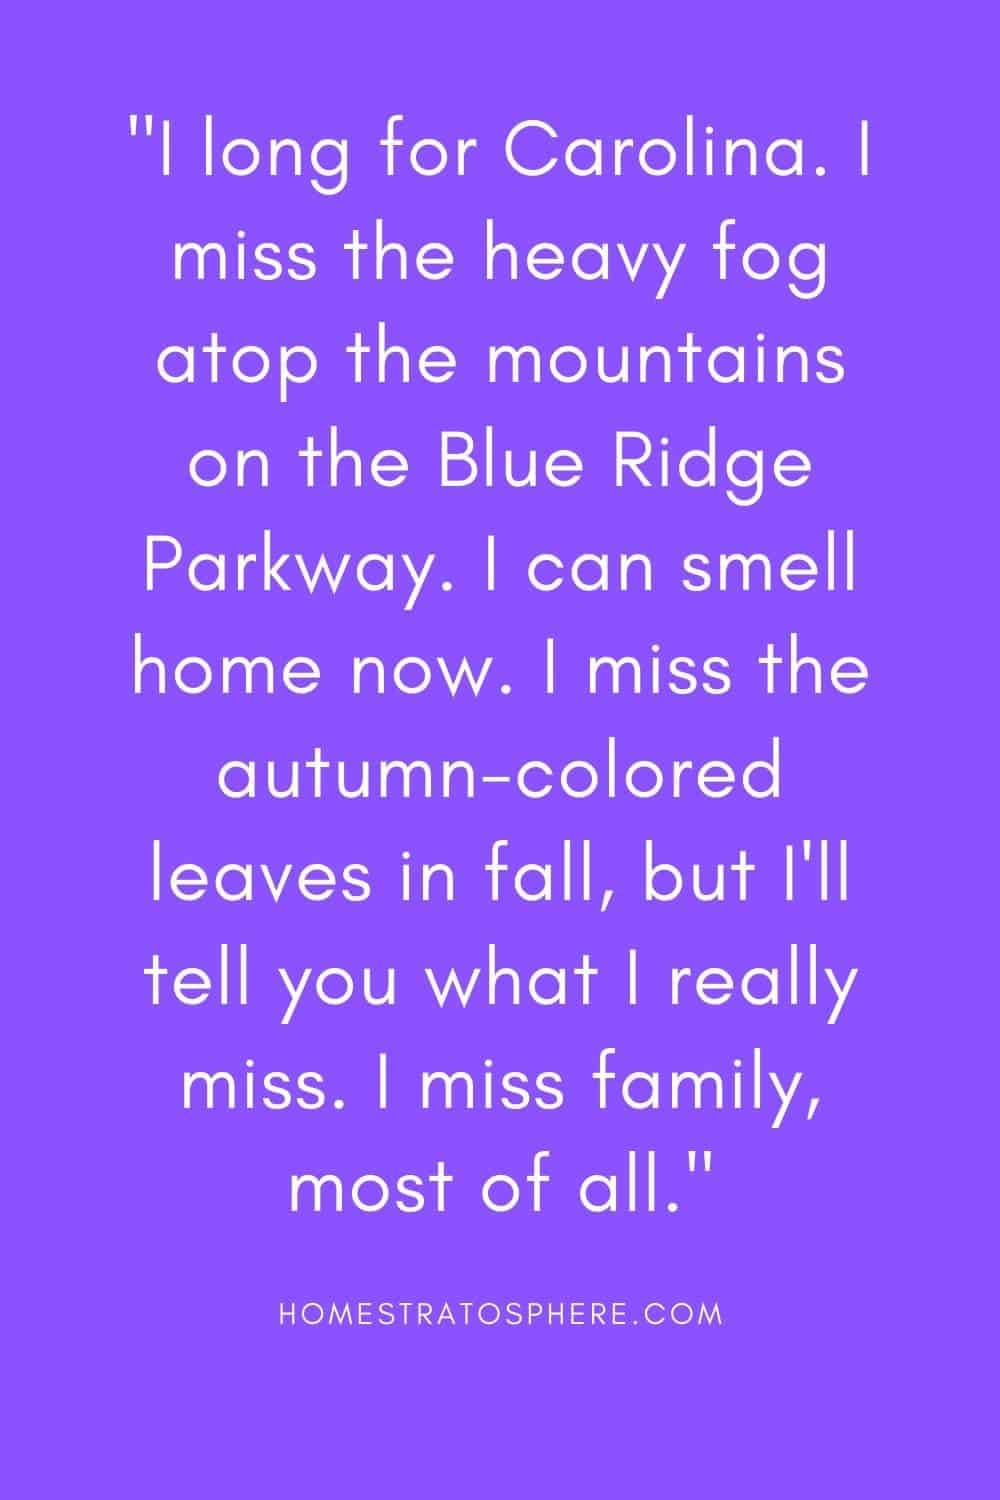 “我渴望卡罗莱纳。我想念蓝岭公园路上山顶上的浓雾。我现在能闻到家的味道了。我在秋天想念秋天的树叶，但我要告诉你我真正想念的是什么——我最想的是家人。”